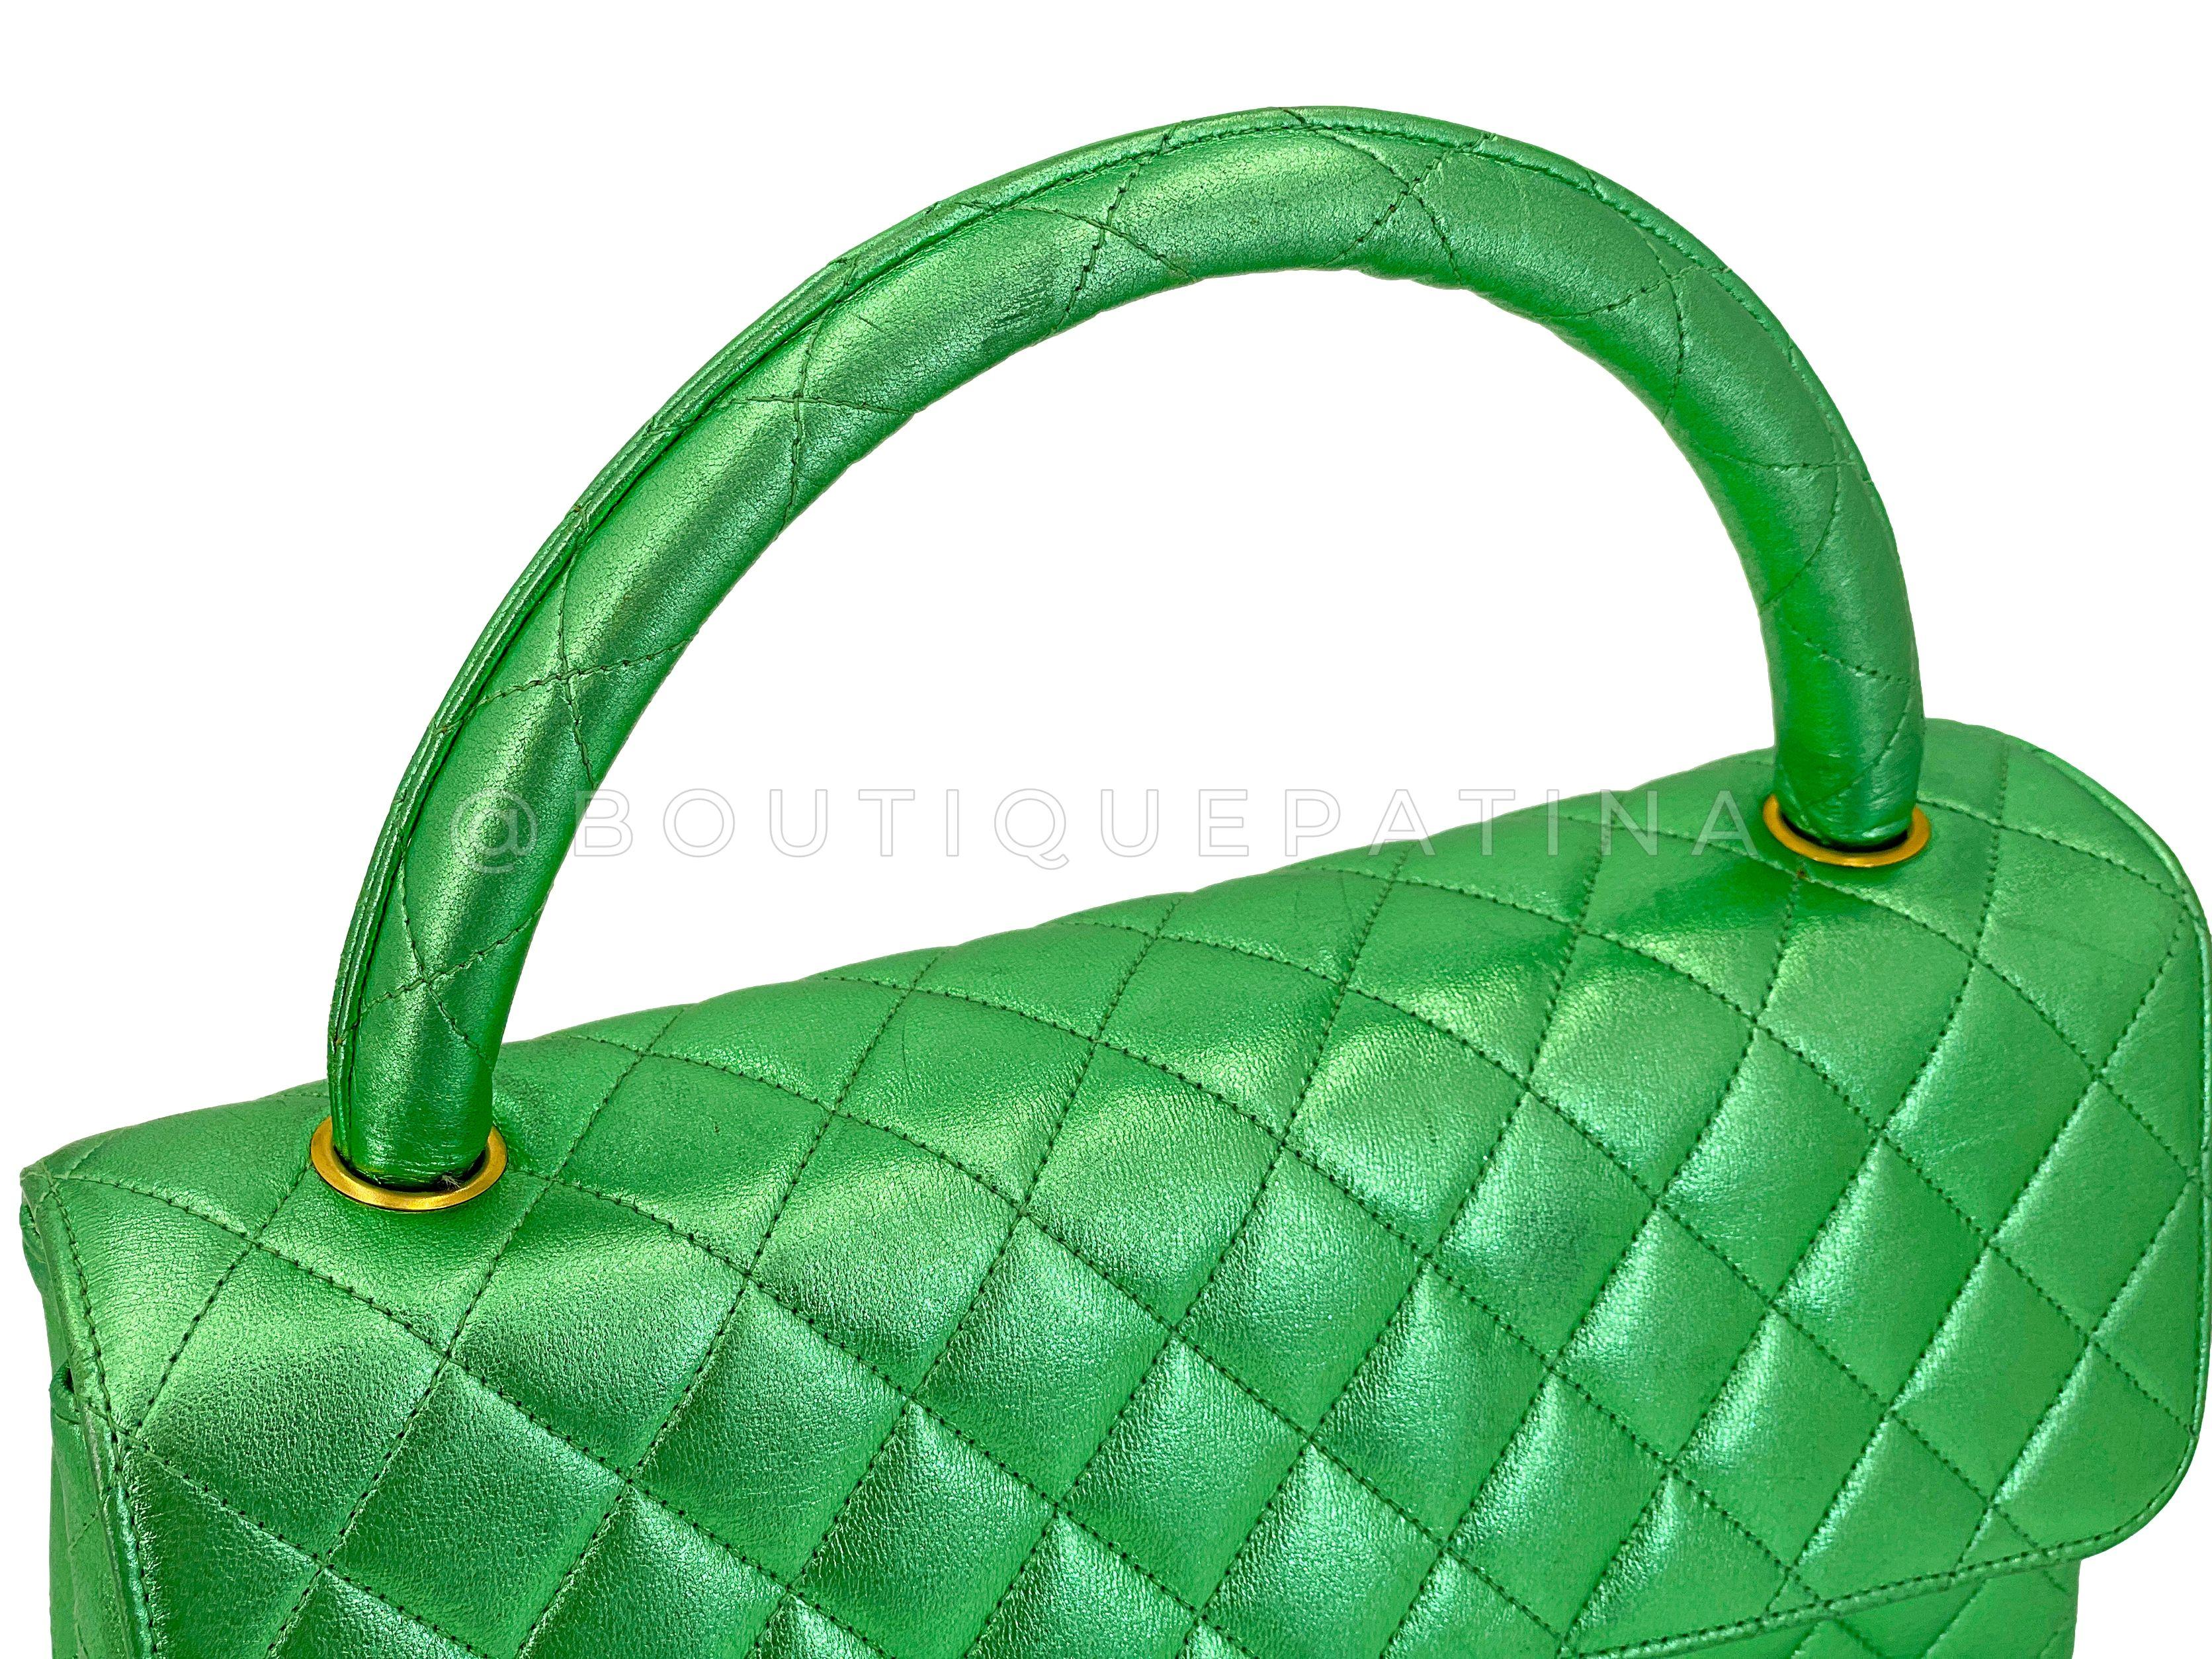 Chanel 1994 Vintage Parent Child Bag Kelly Flap Set Metallic Green 24k GHW 67742 For Sale 9